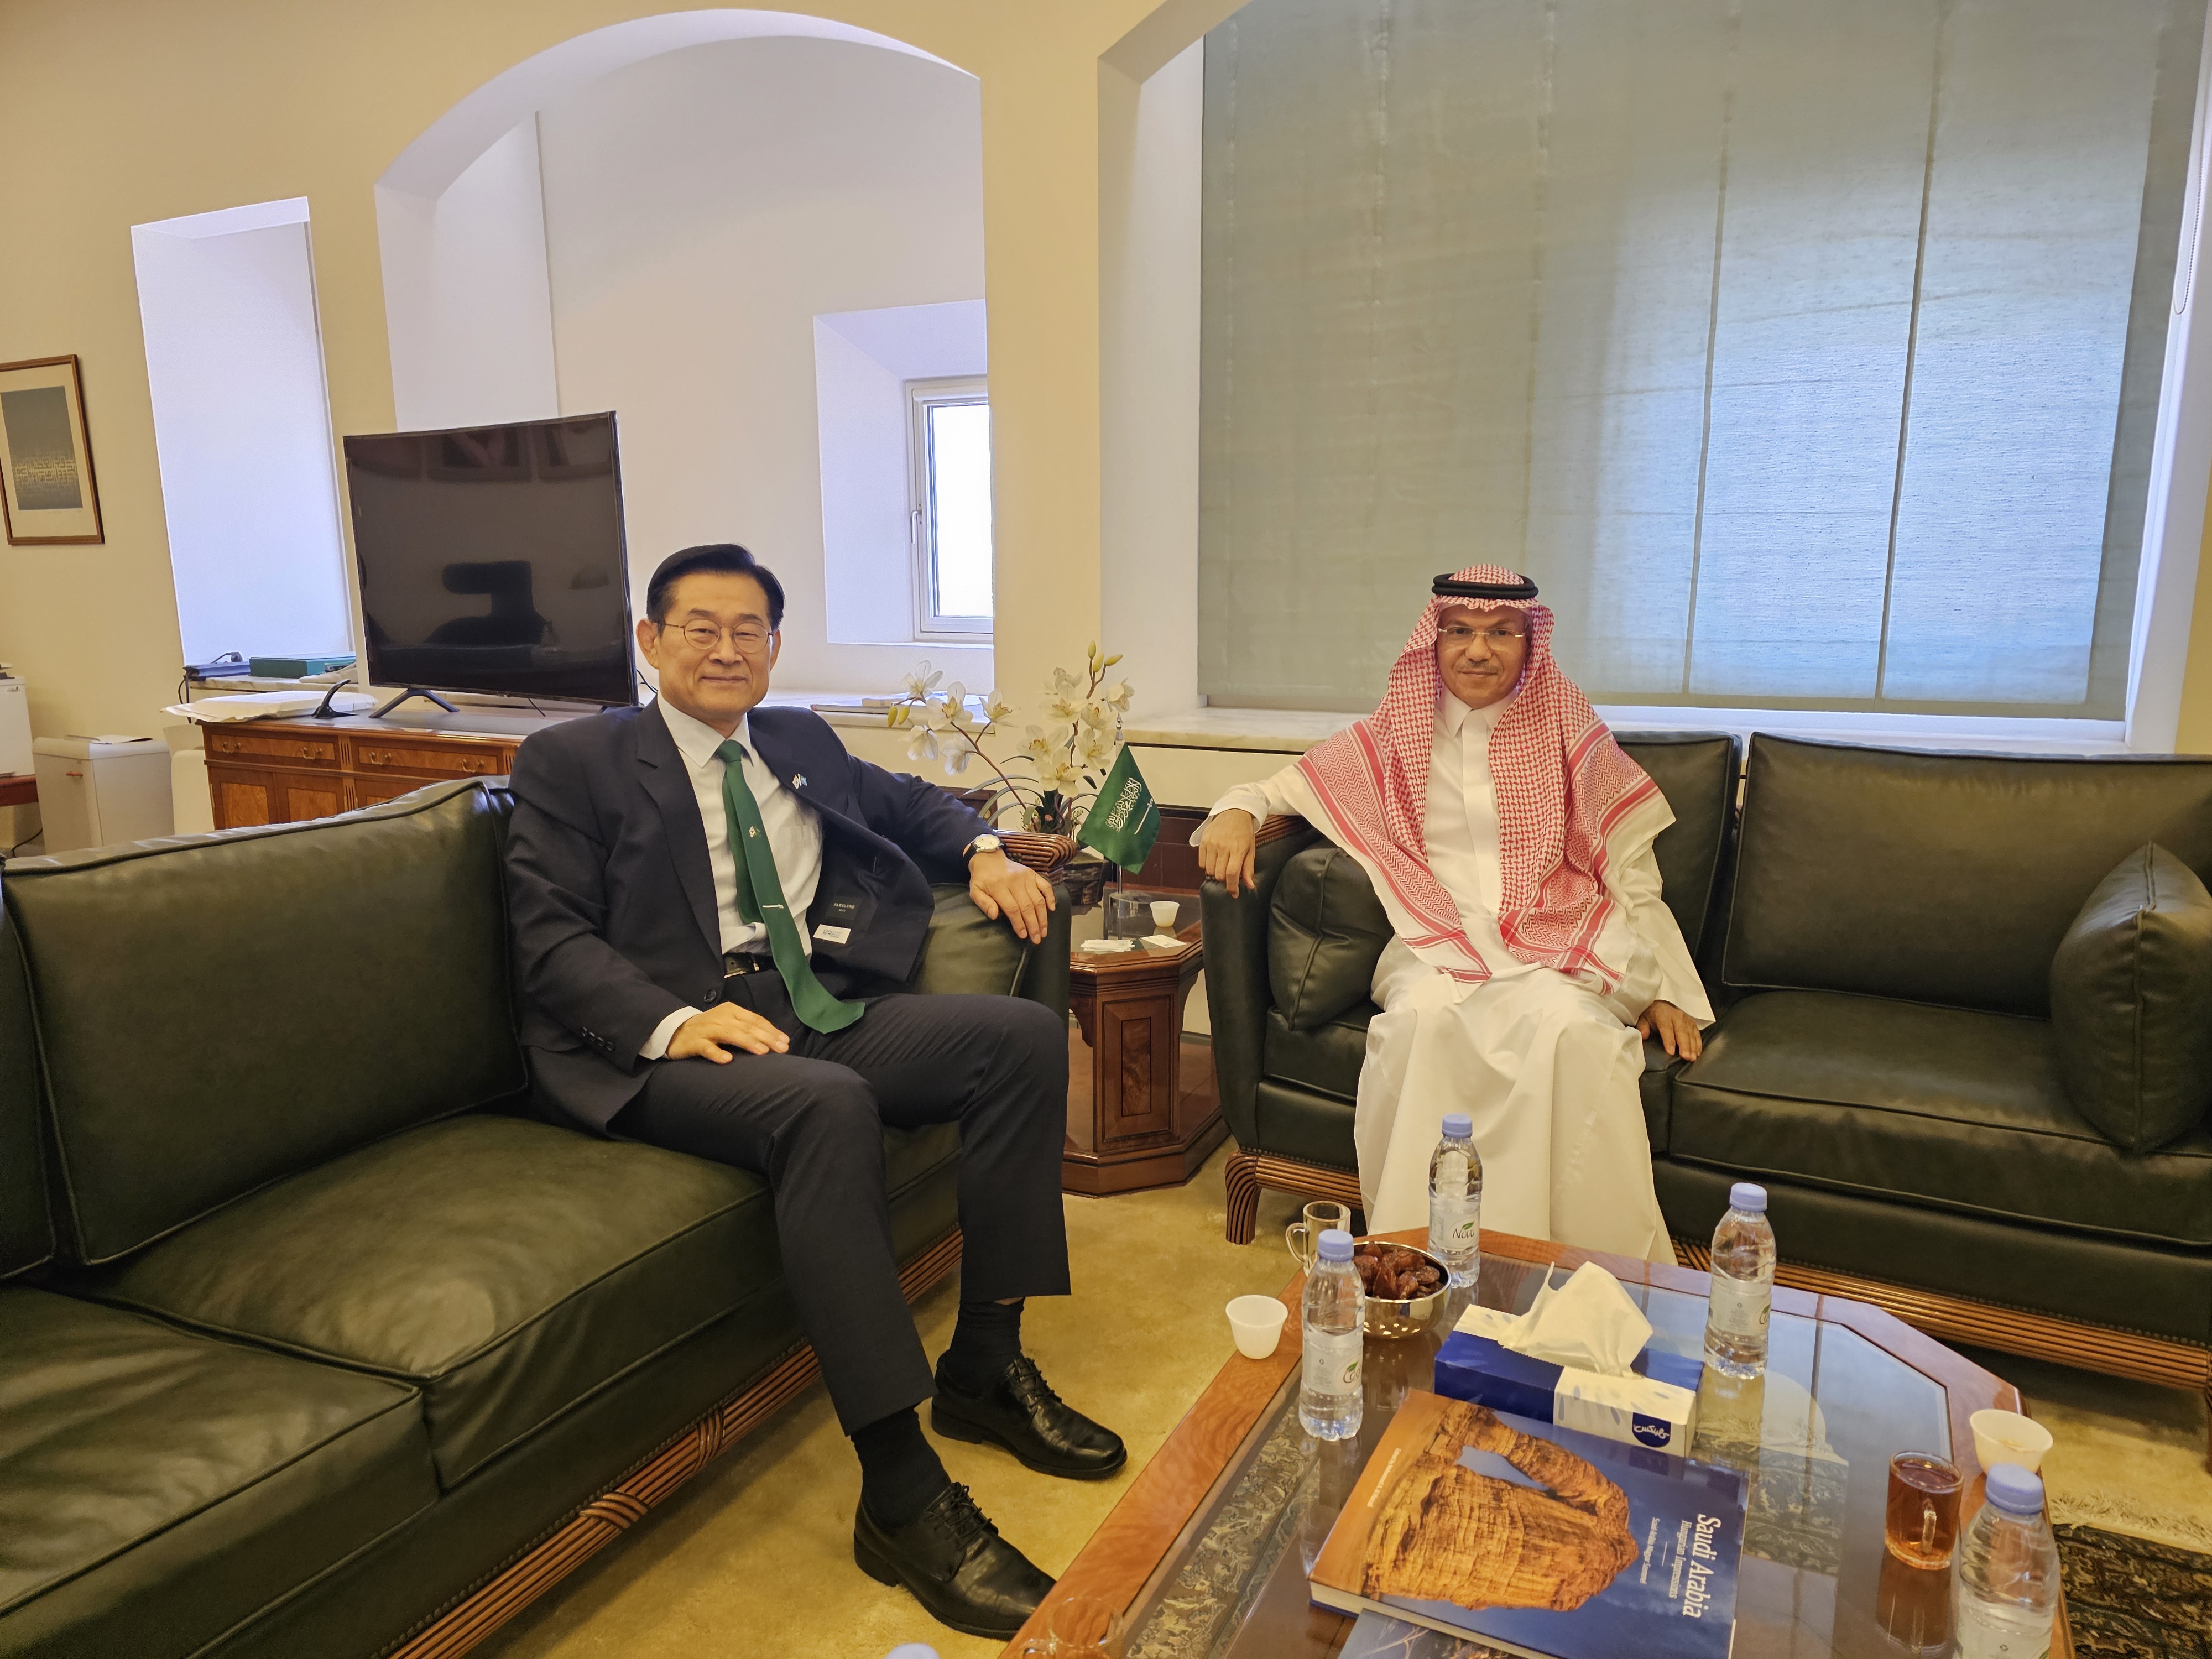 سعادة السفير يلتقي بسعادة مدير عام الإدارة العامة للدول الآسيوية بوزارة الخارجية